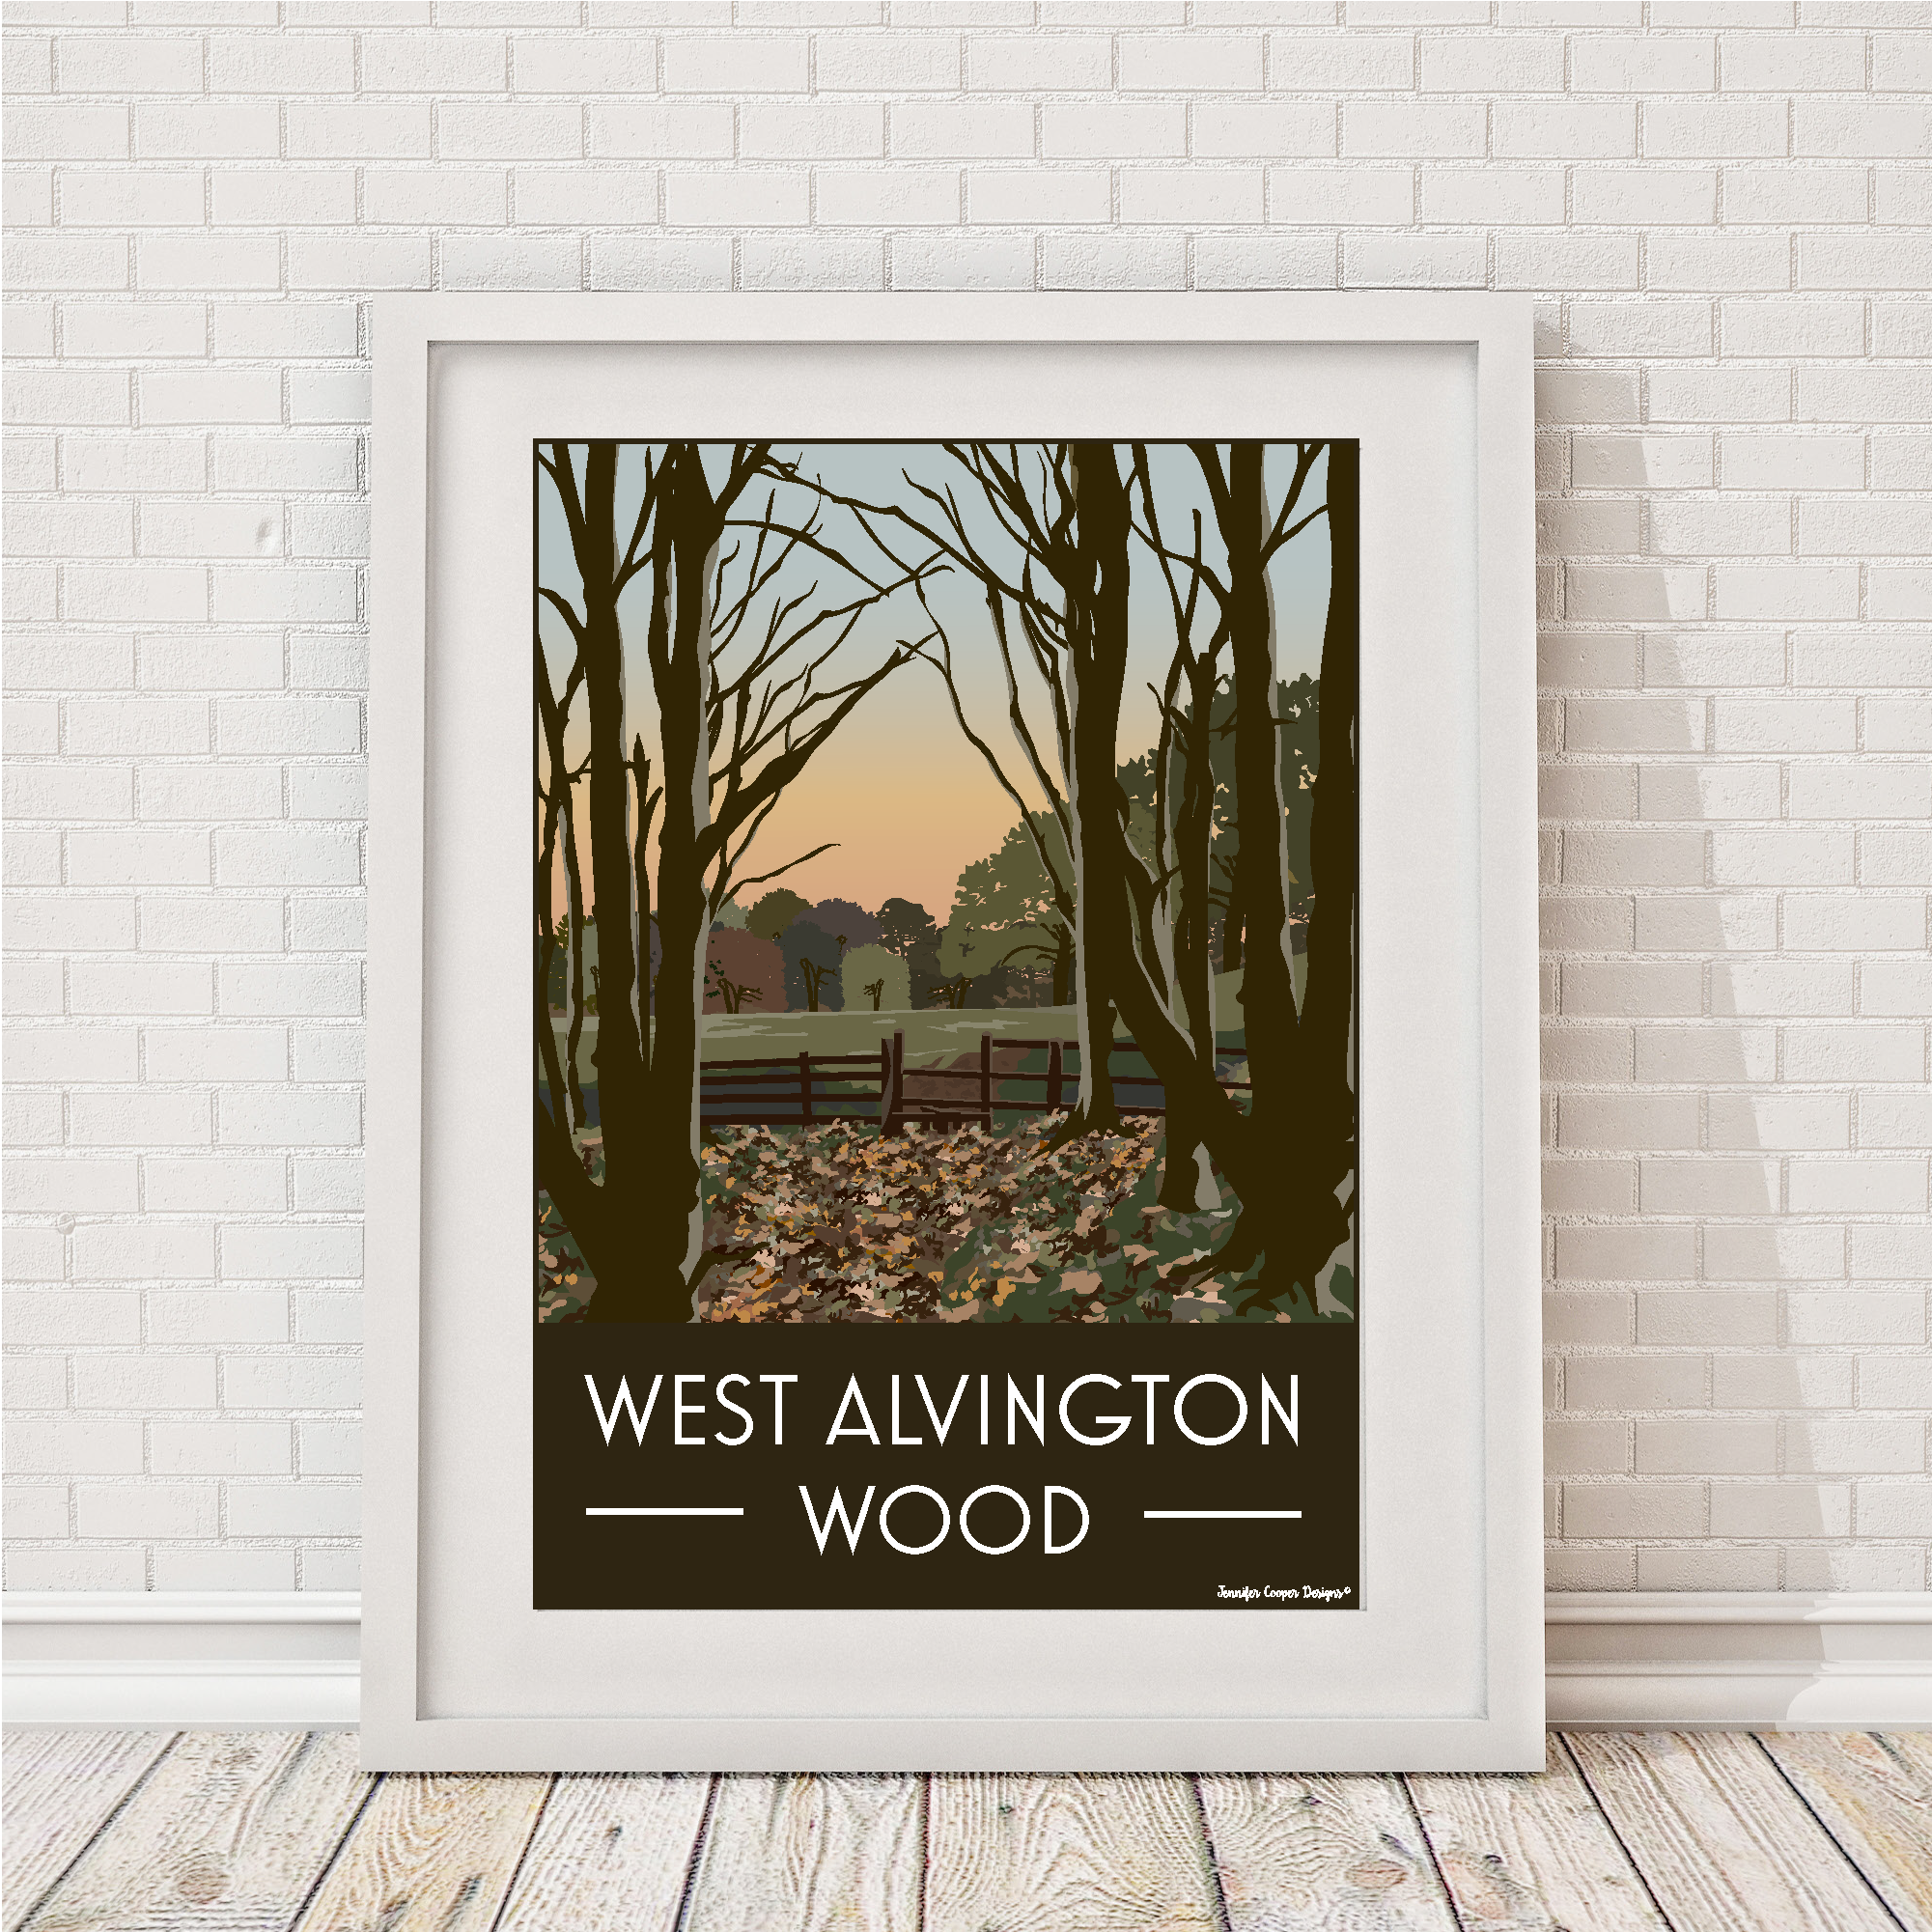 West Alvington Wood